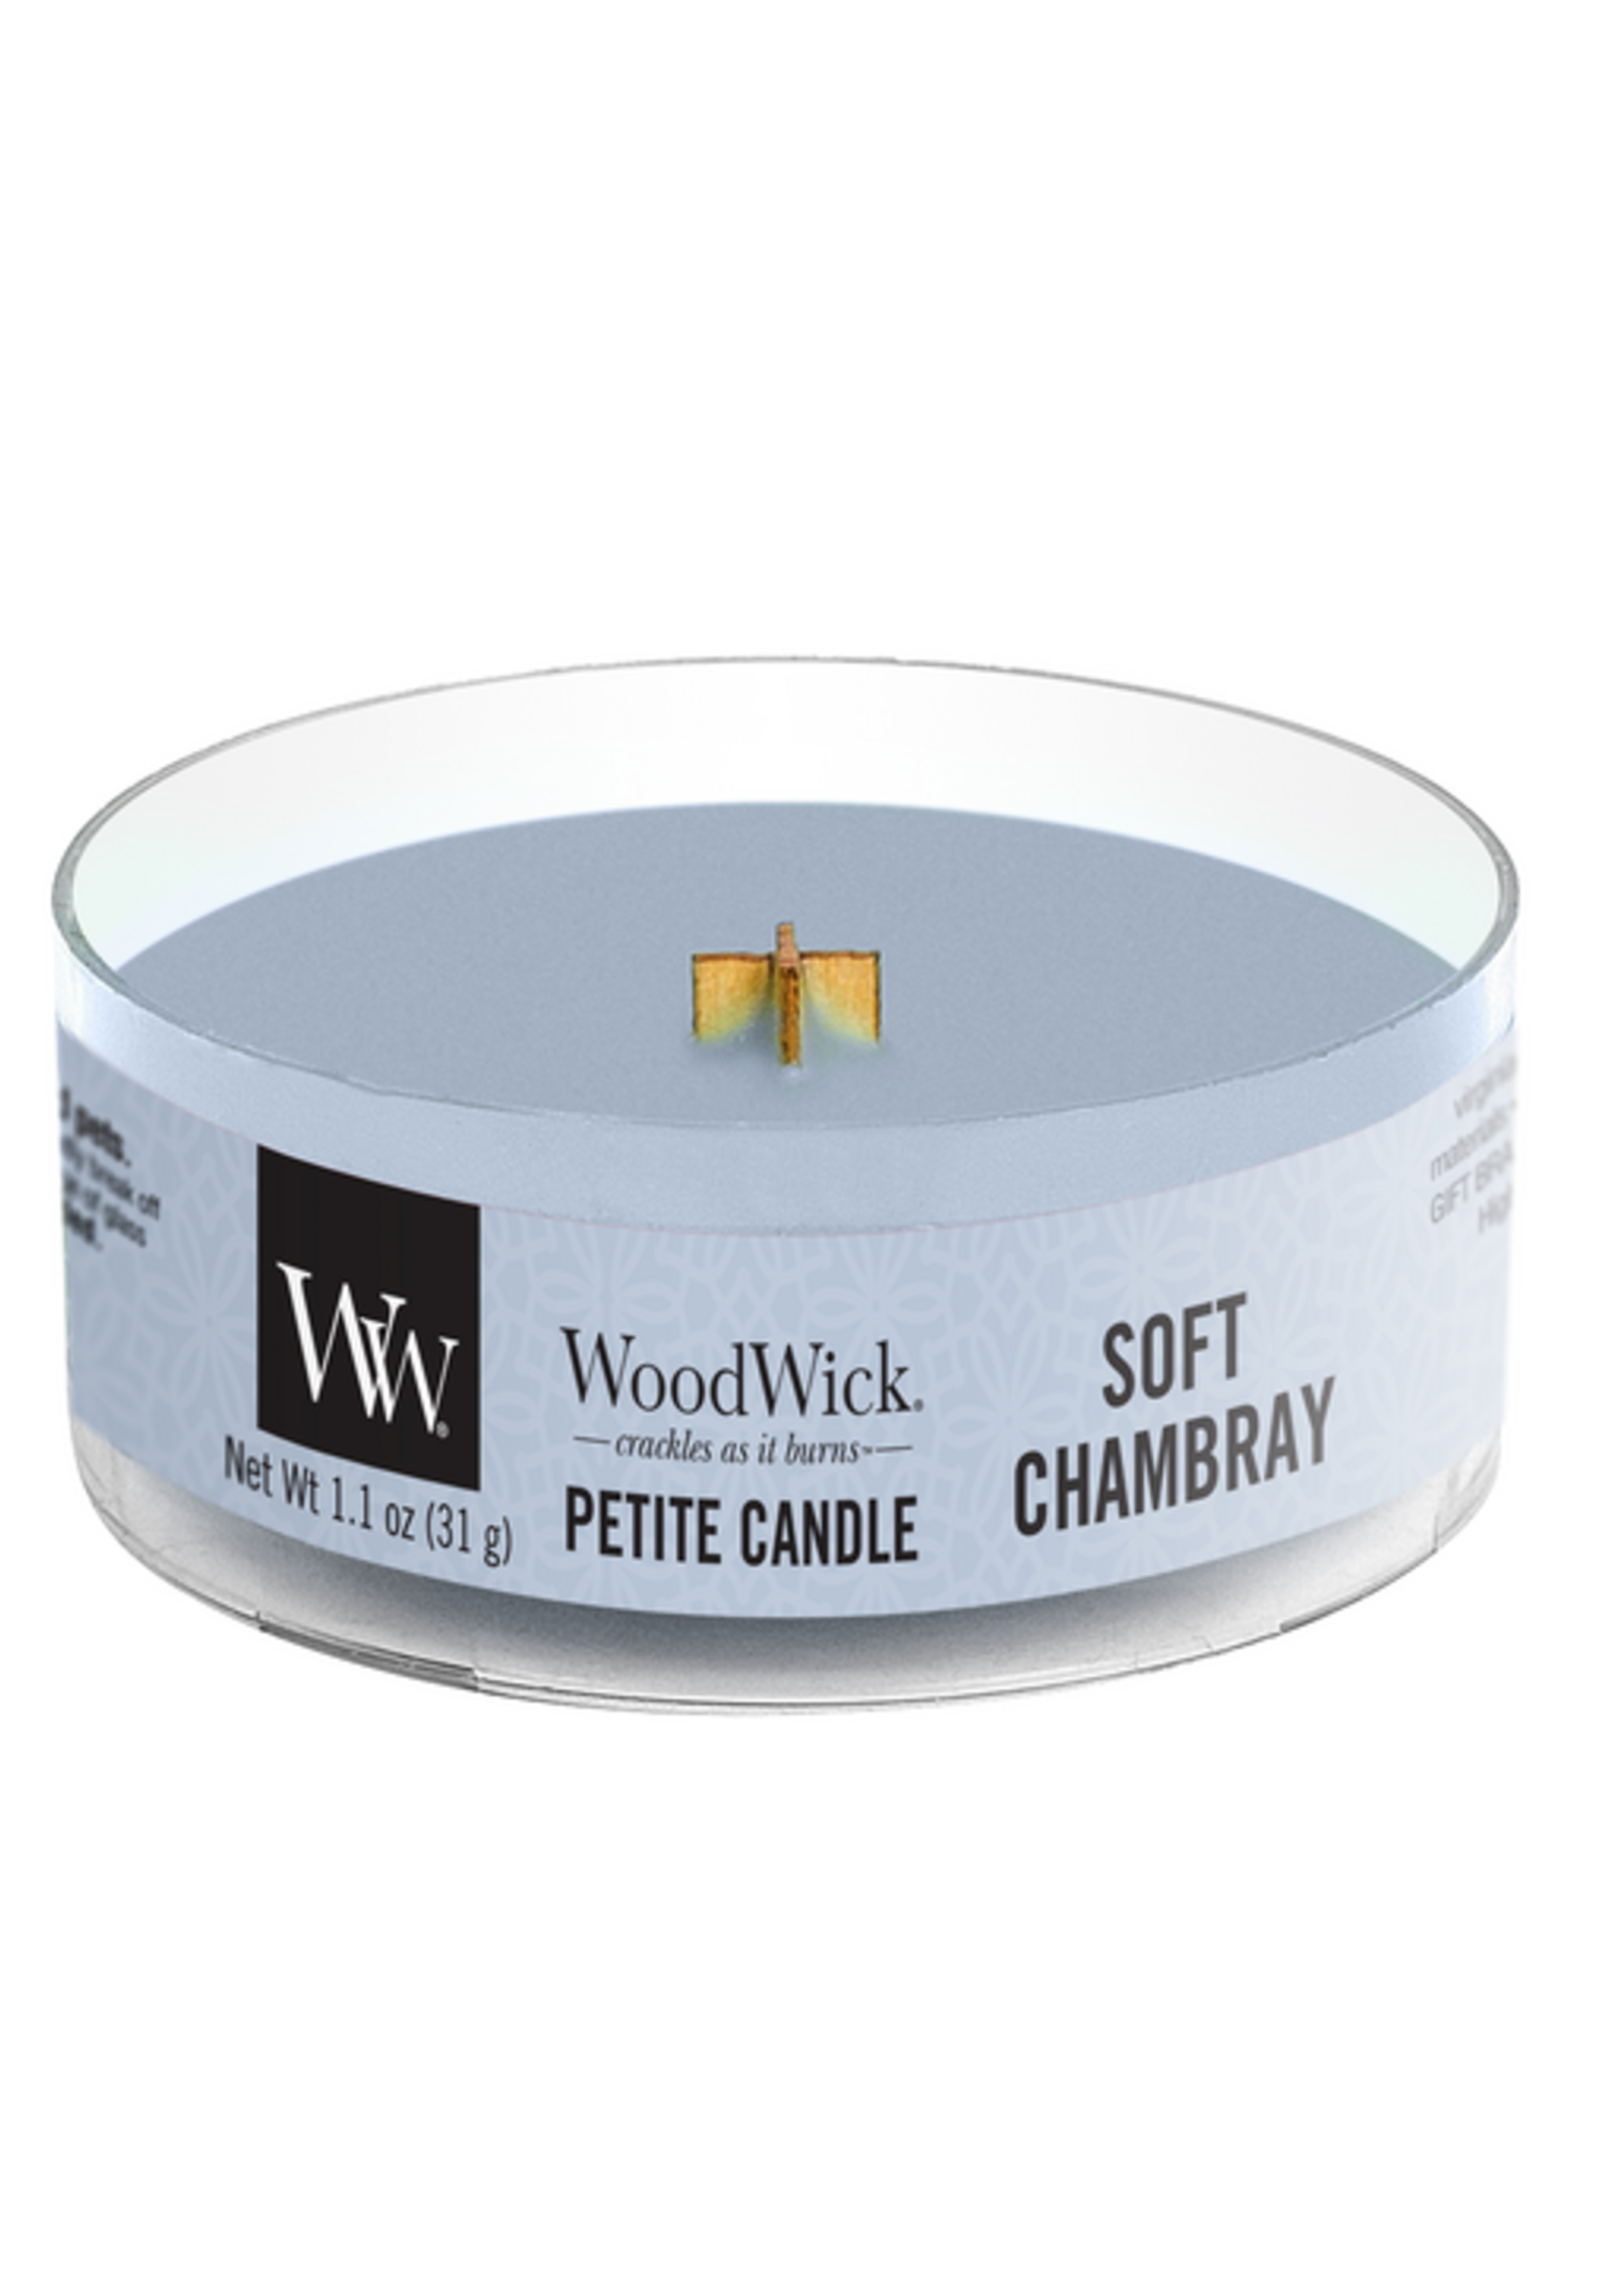 Woodwick Soft chambray petite candle